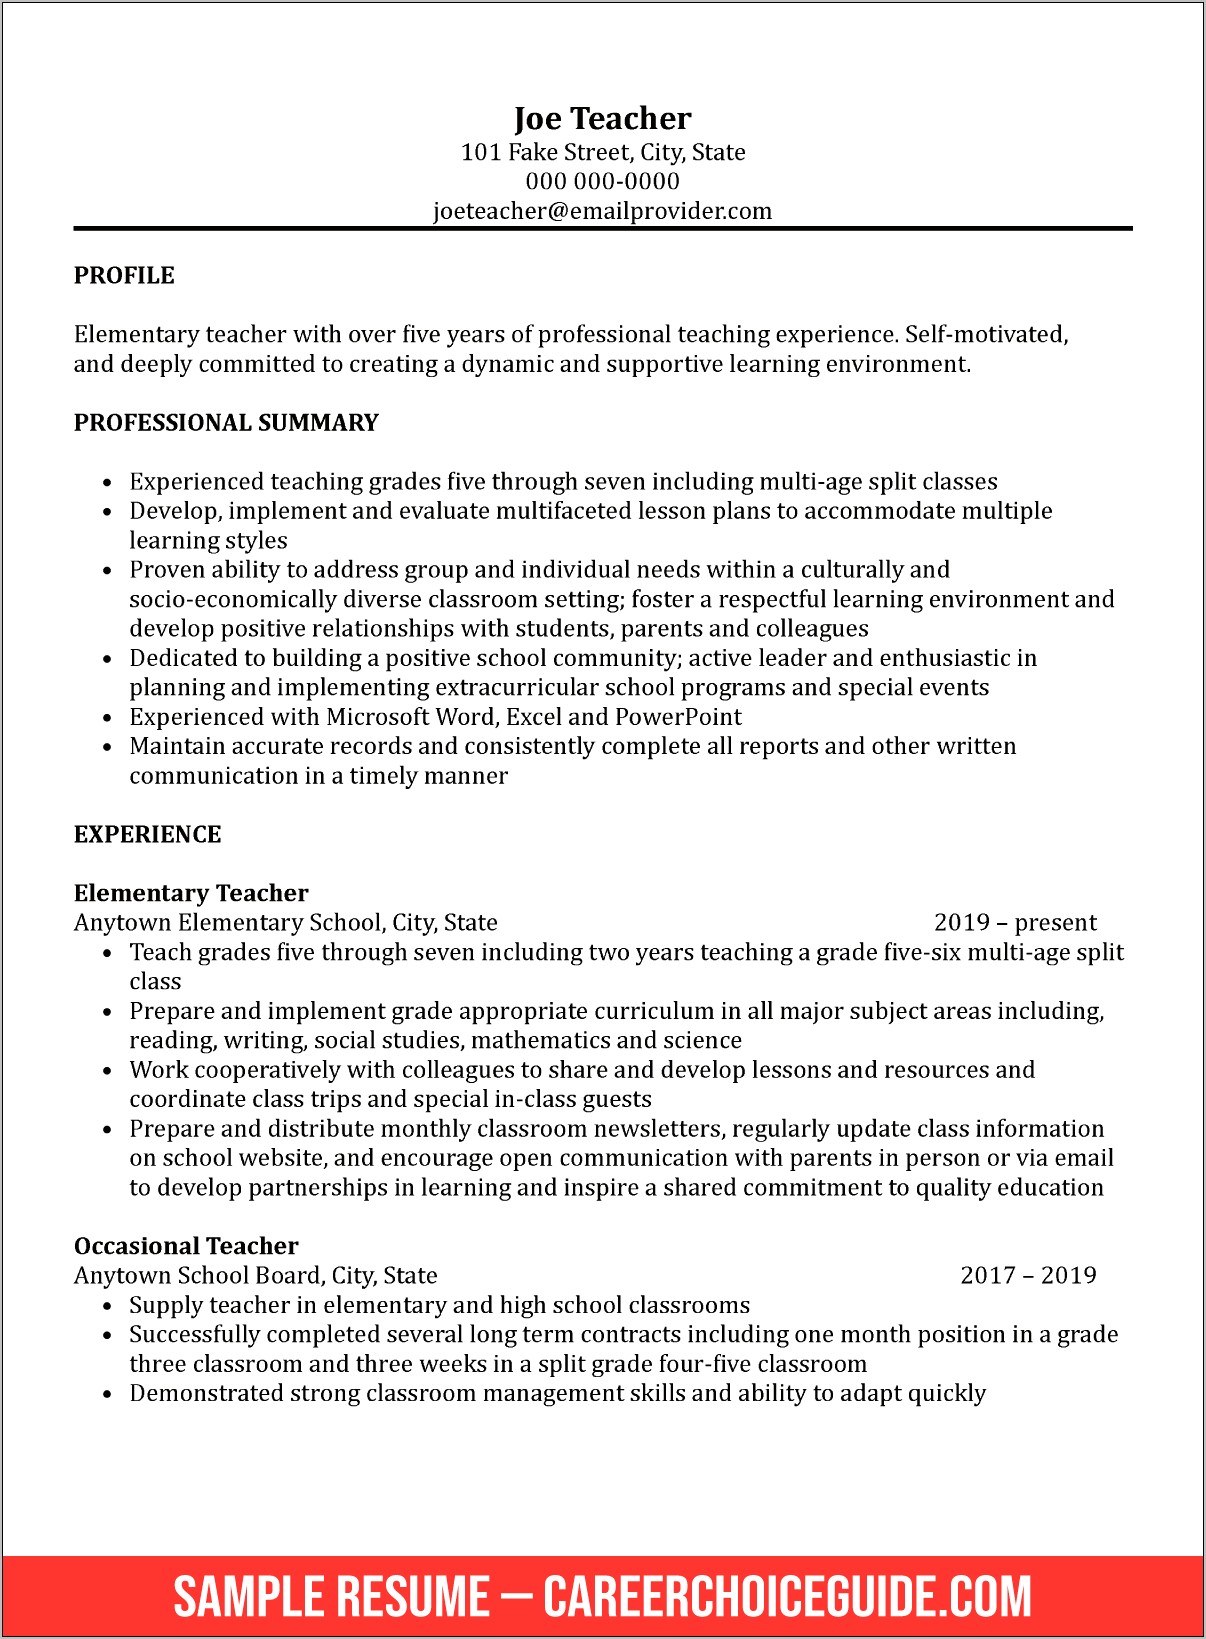 Sample Profile For Teacher Resume